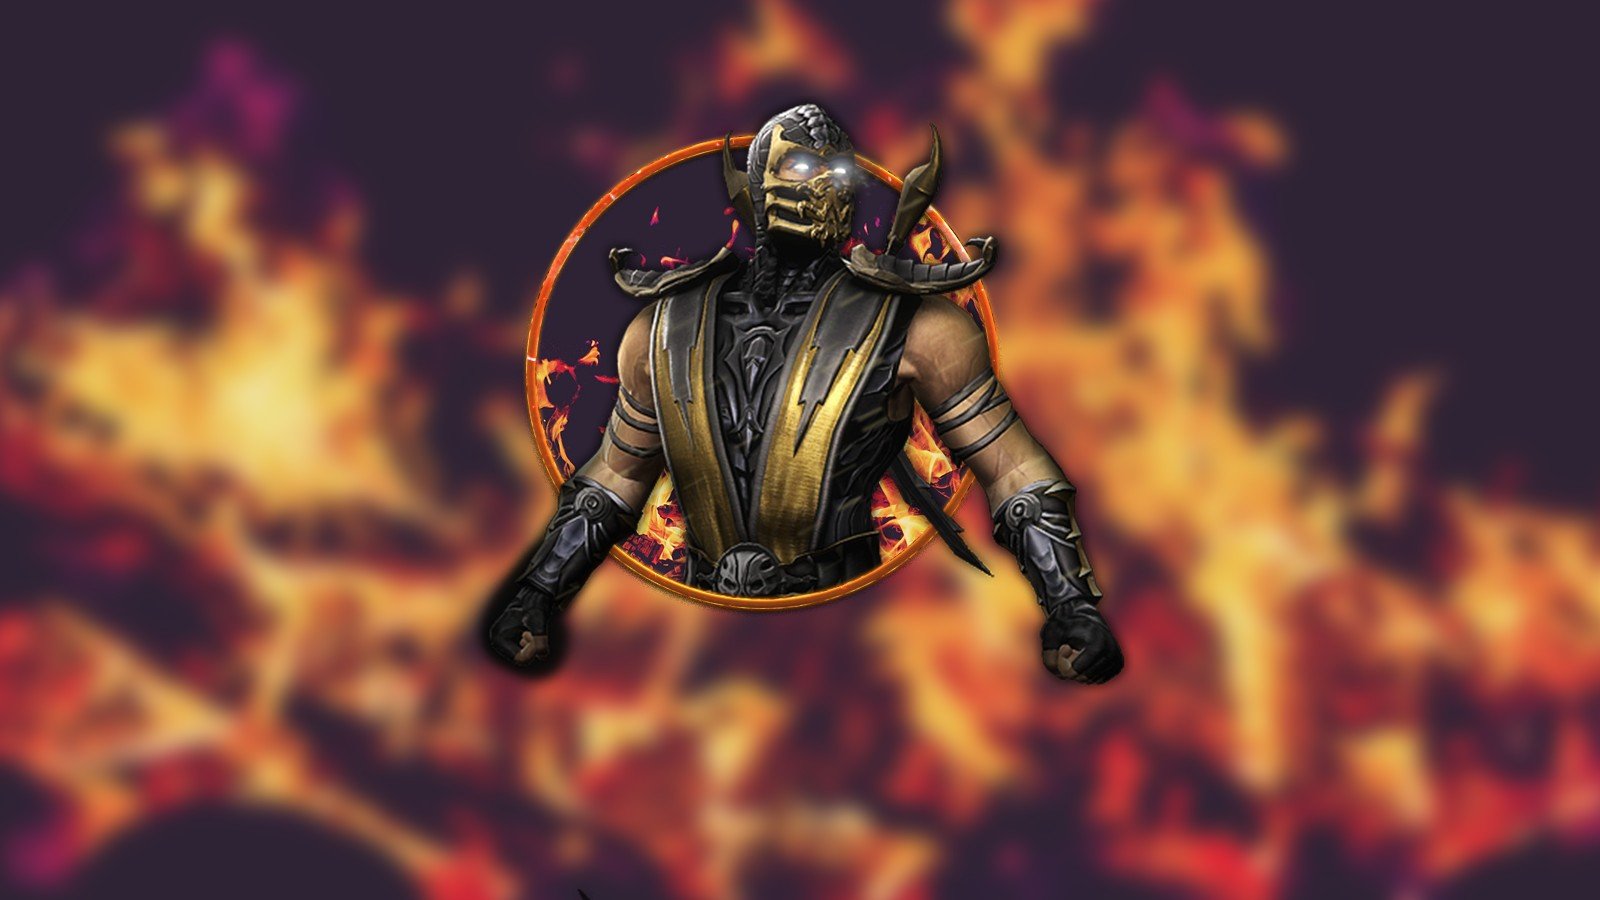 Скорпион (Mortal Kombat)